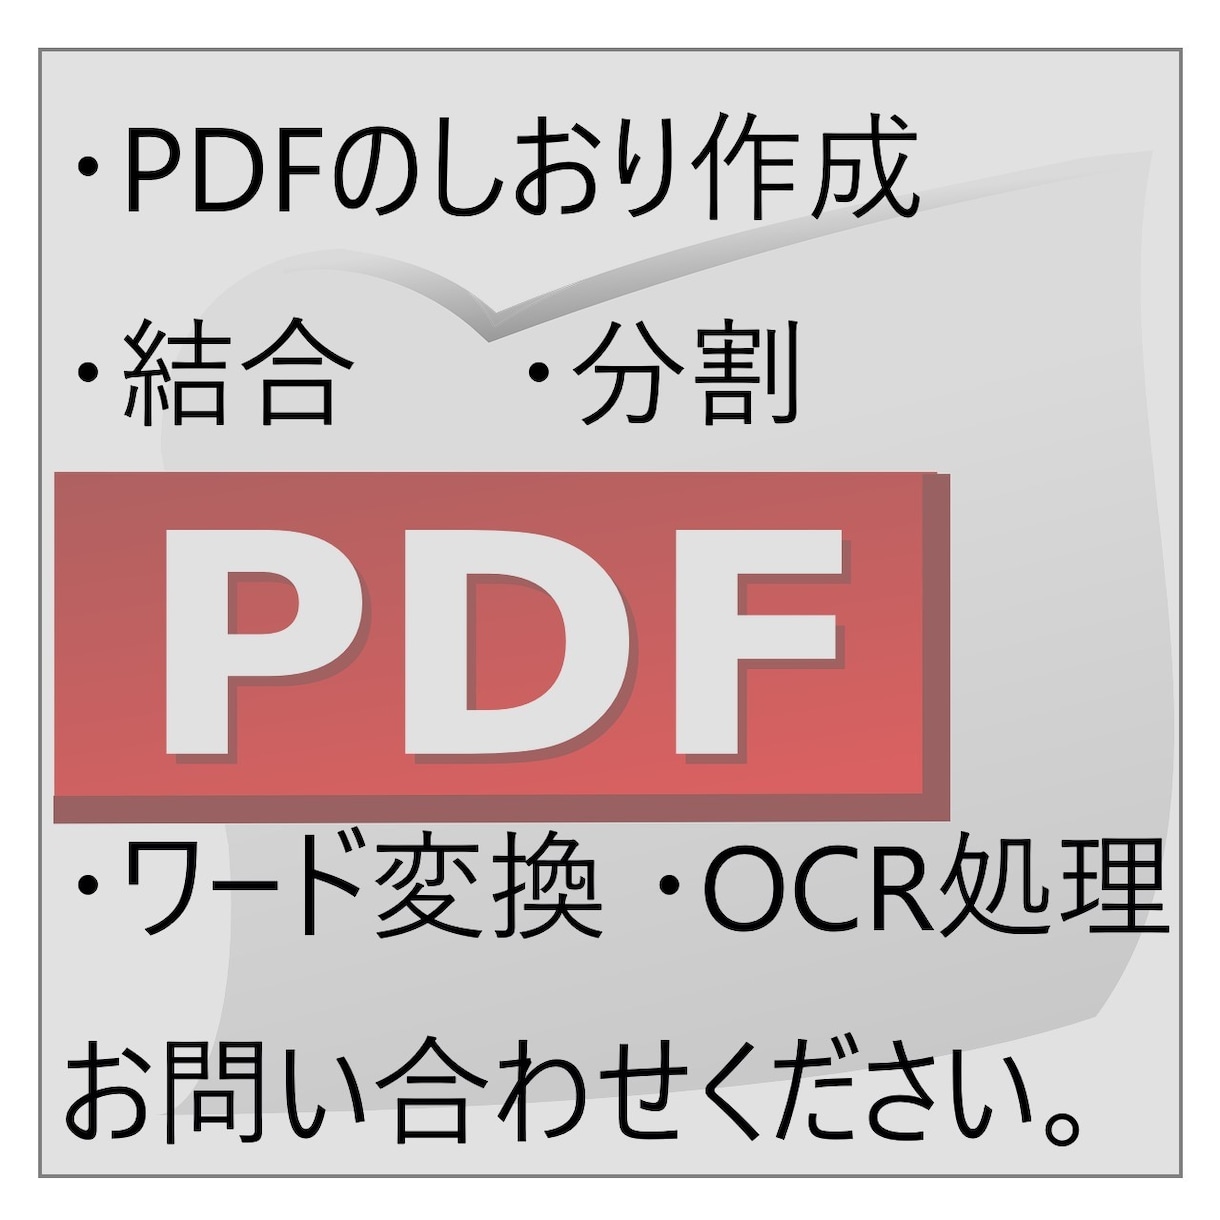 PDFのしおり作成、分割、結合、ワード変換できます PDFに関するお悩み解決します。 イメージ1